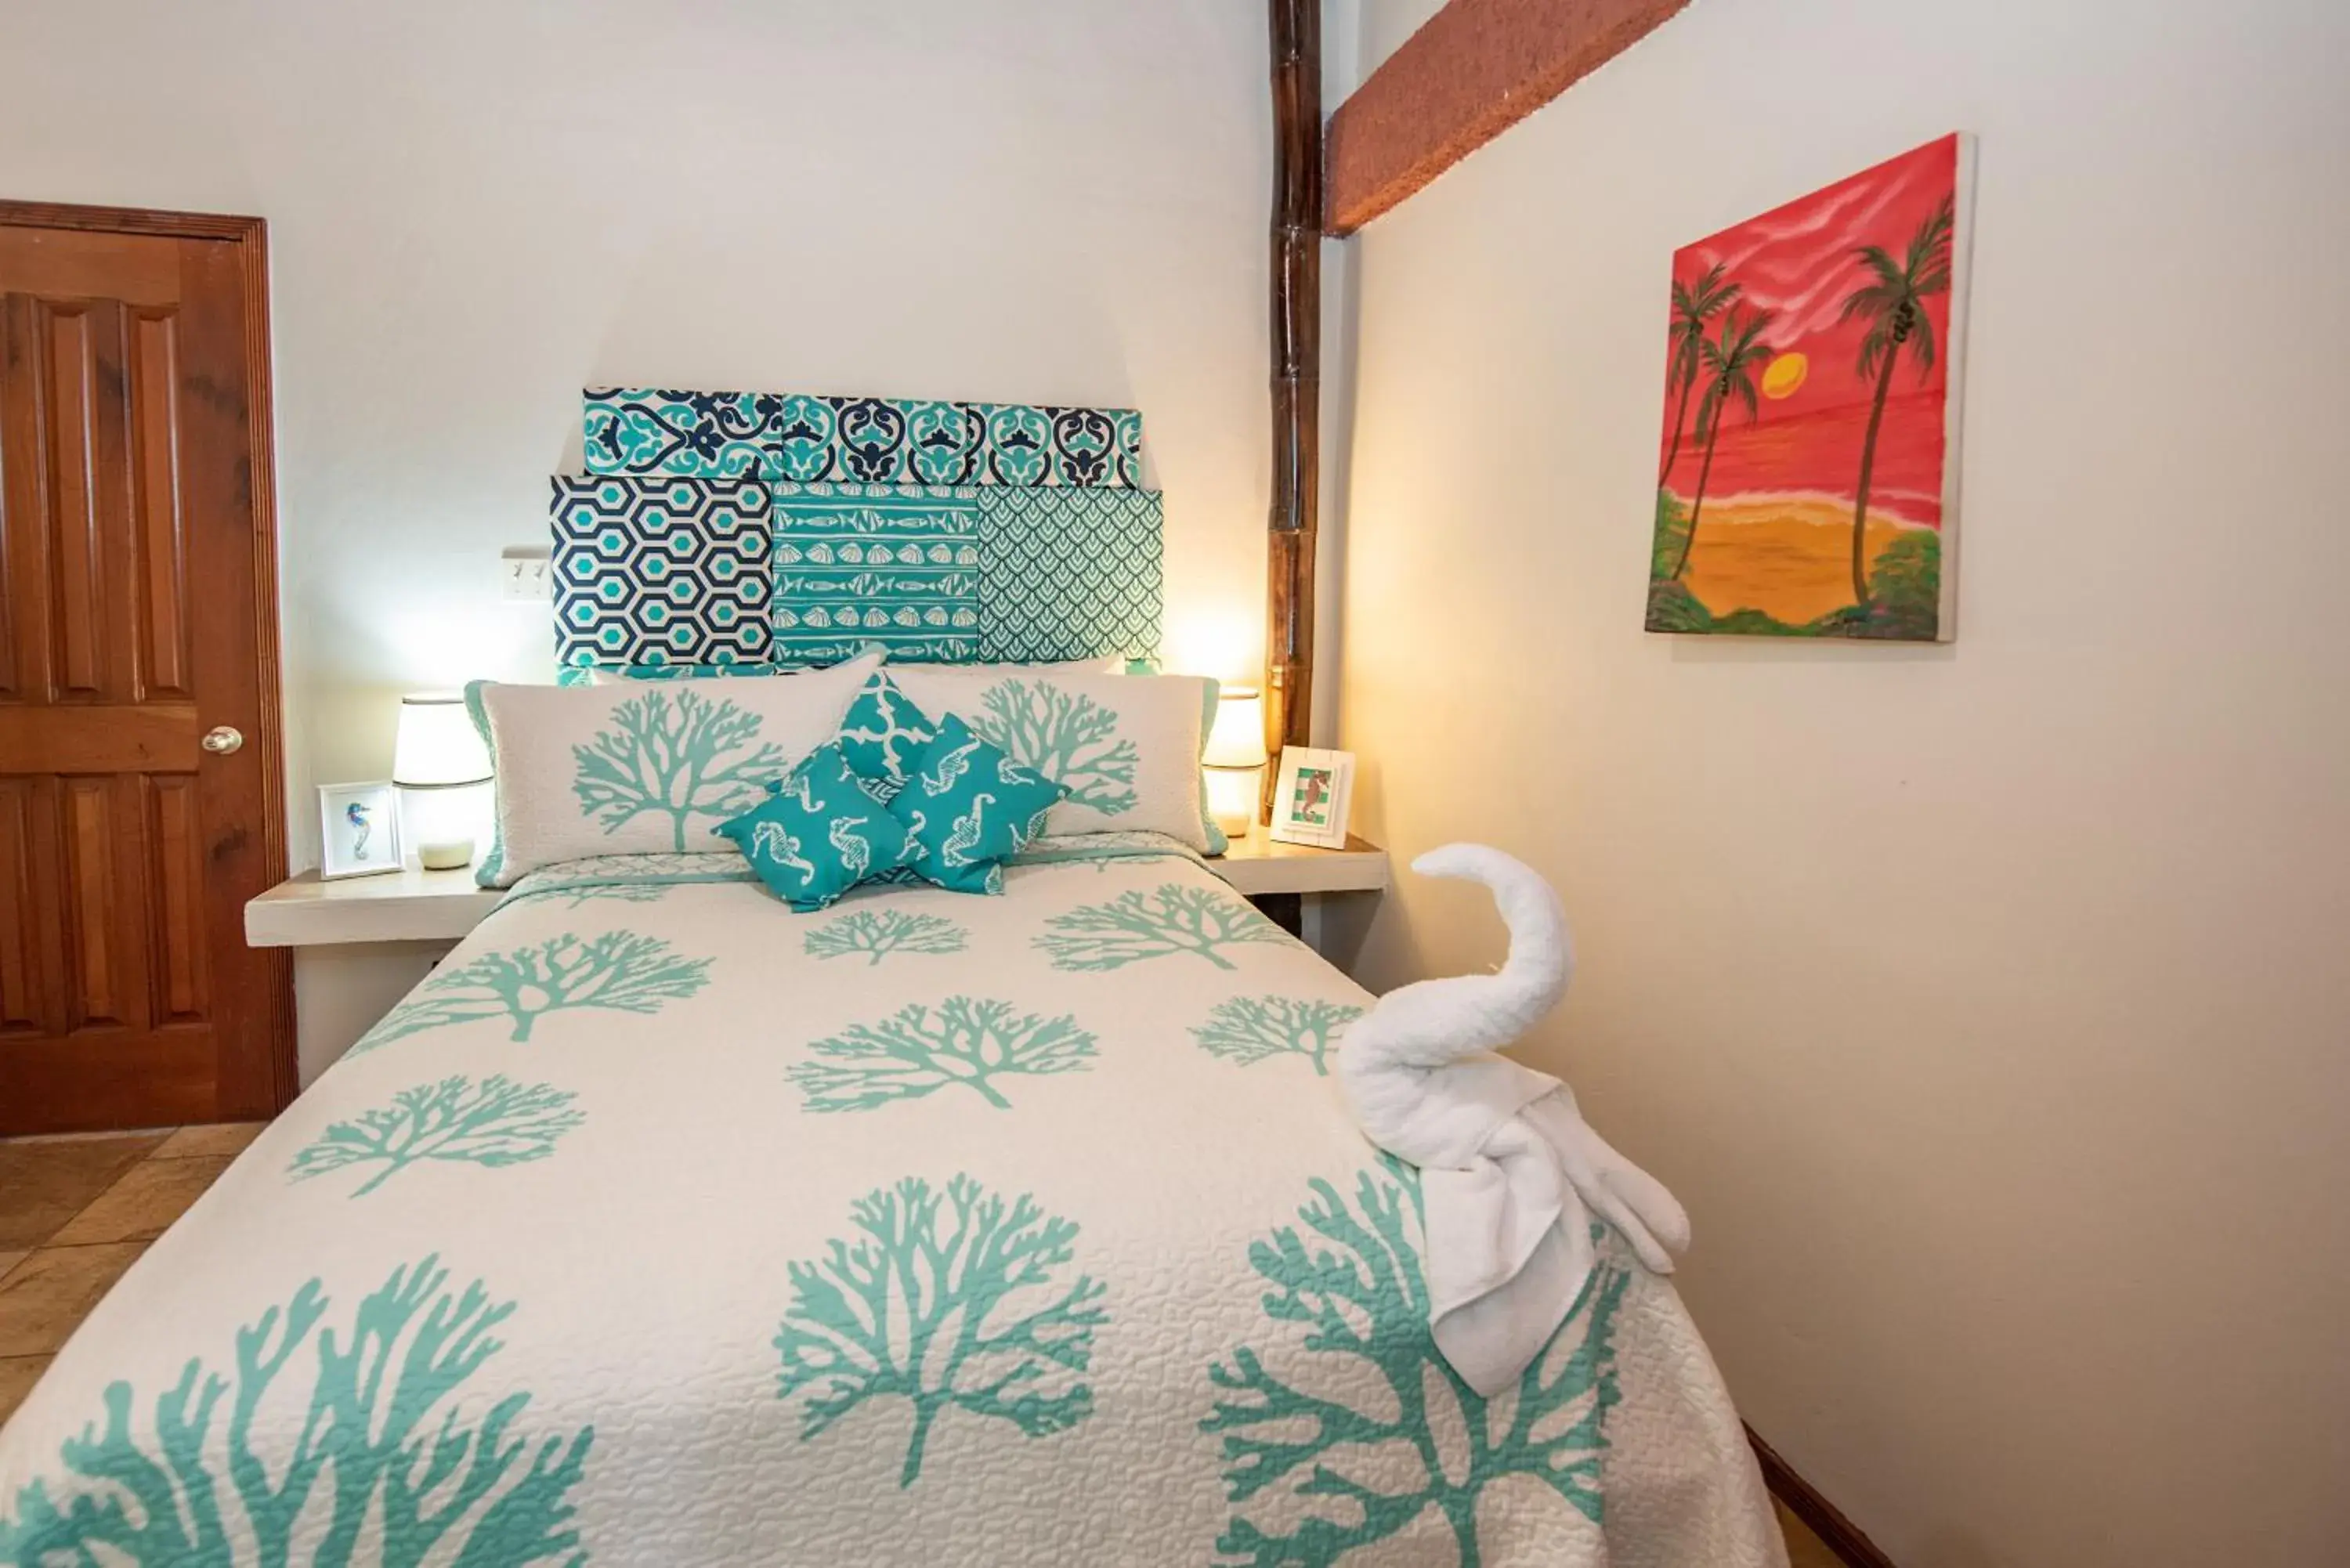 Decorative detail, Bed in Bella Vista Resort Belize